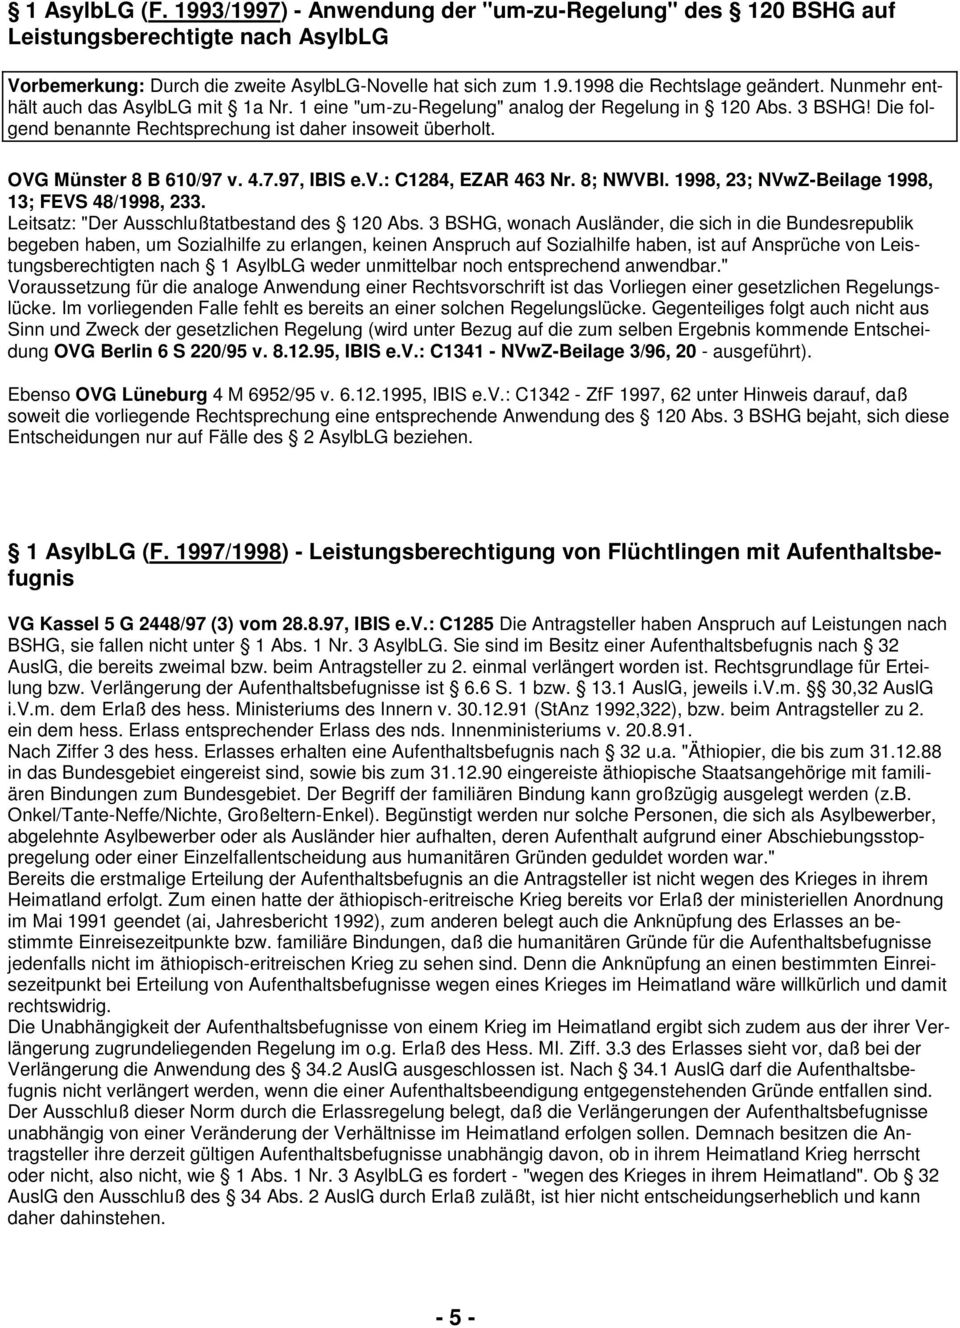 4.7.97, IBIS e.v.: C1284, EZAR 463 Nr. 8; NWVBl. 1998, 23; NVwZ-Beilage 1998, 13; FEVS 48/1998, 233. Leitsatz: "Der Ausschlußtatbestand des 120 Abs.